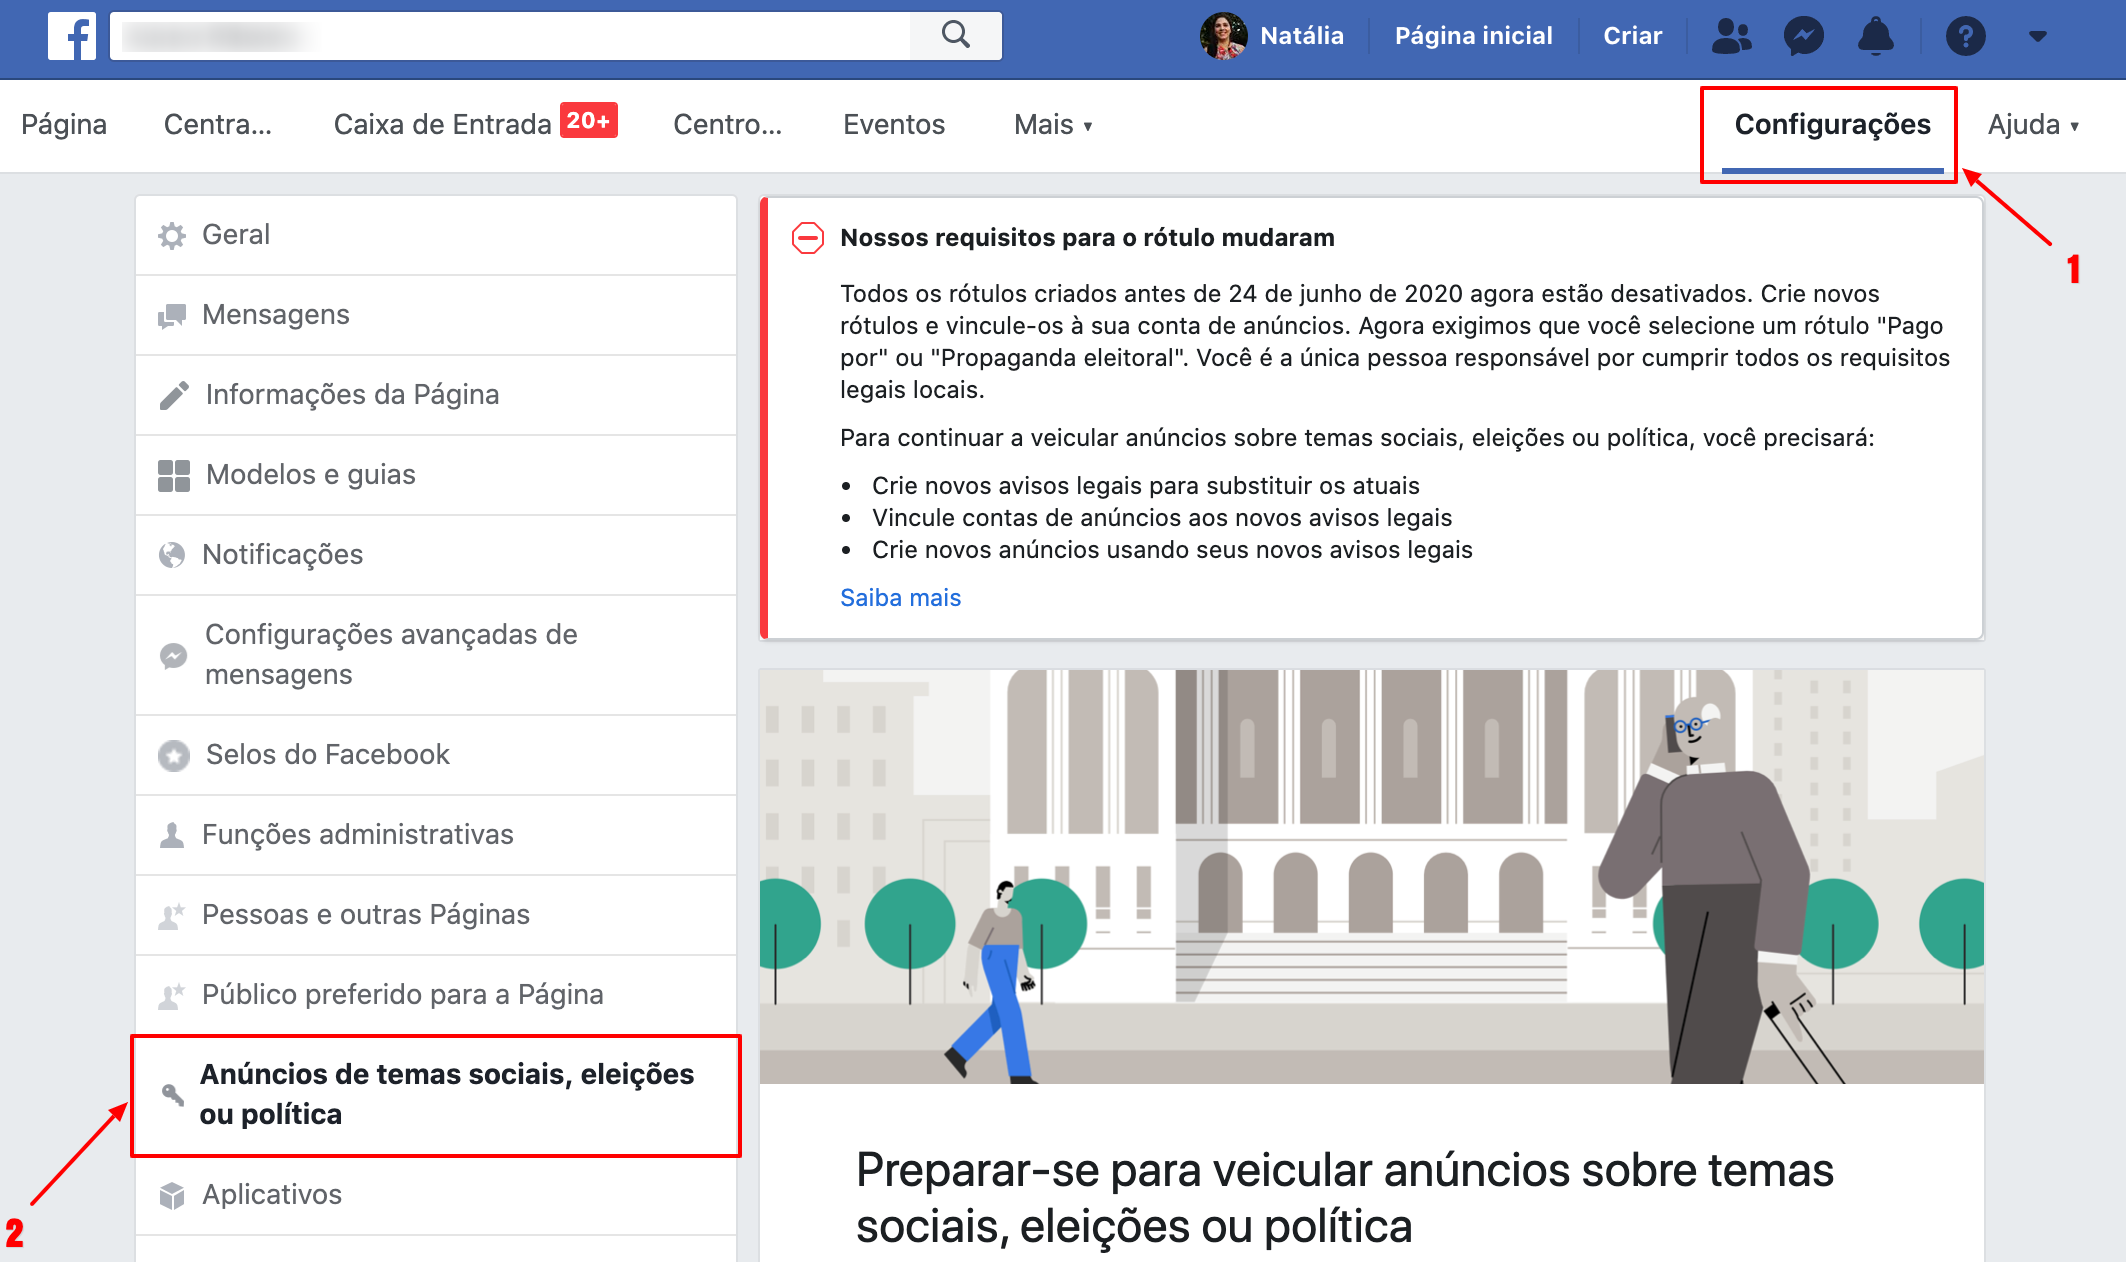 Como verificar perfil para fazer anúncios sobre política e eleições no Facebook